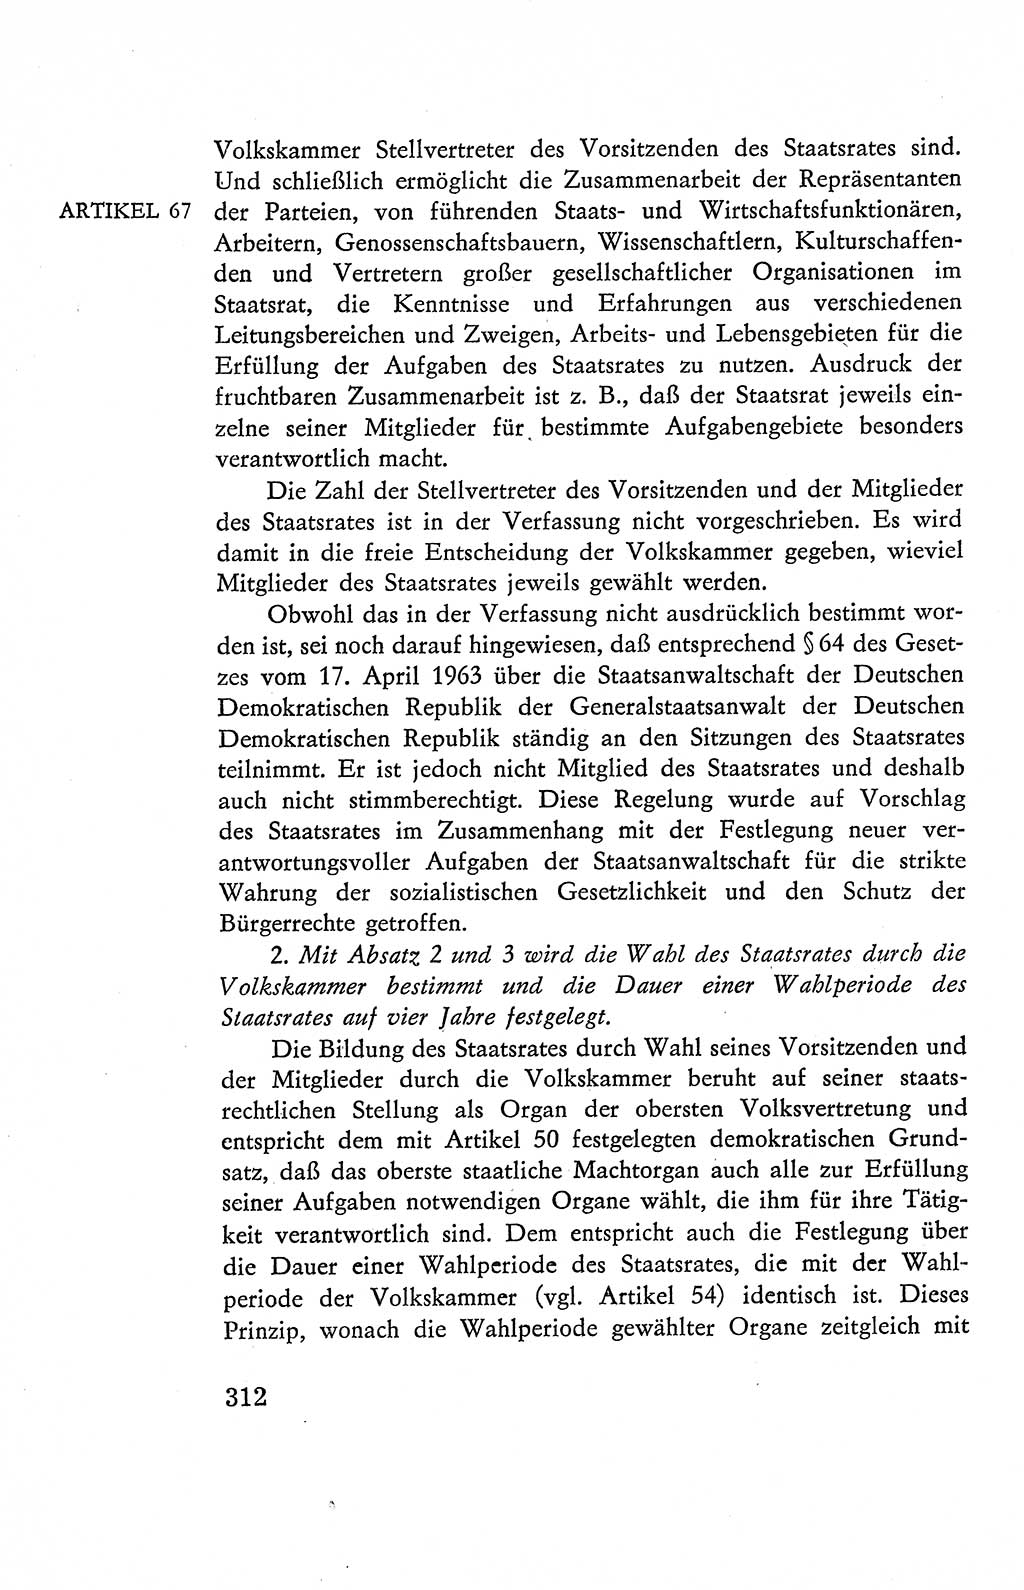 Verfassung der Deutschen Demokratischen Republik (DDR), Dokumente, Kommentar 1969, Band 2, Seite 312 (Verf. DDR Dok. Komm. 1969, Bd. 2, S. 312)